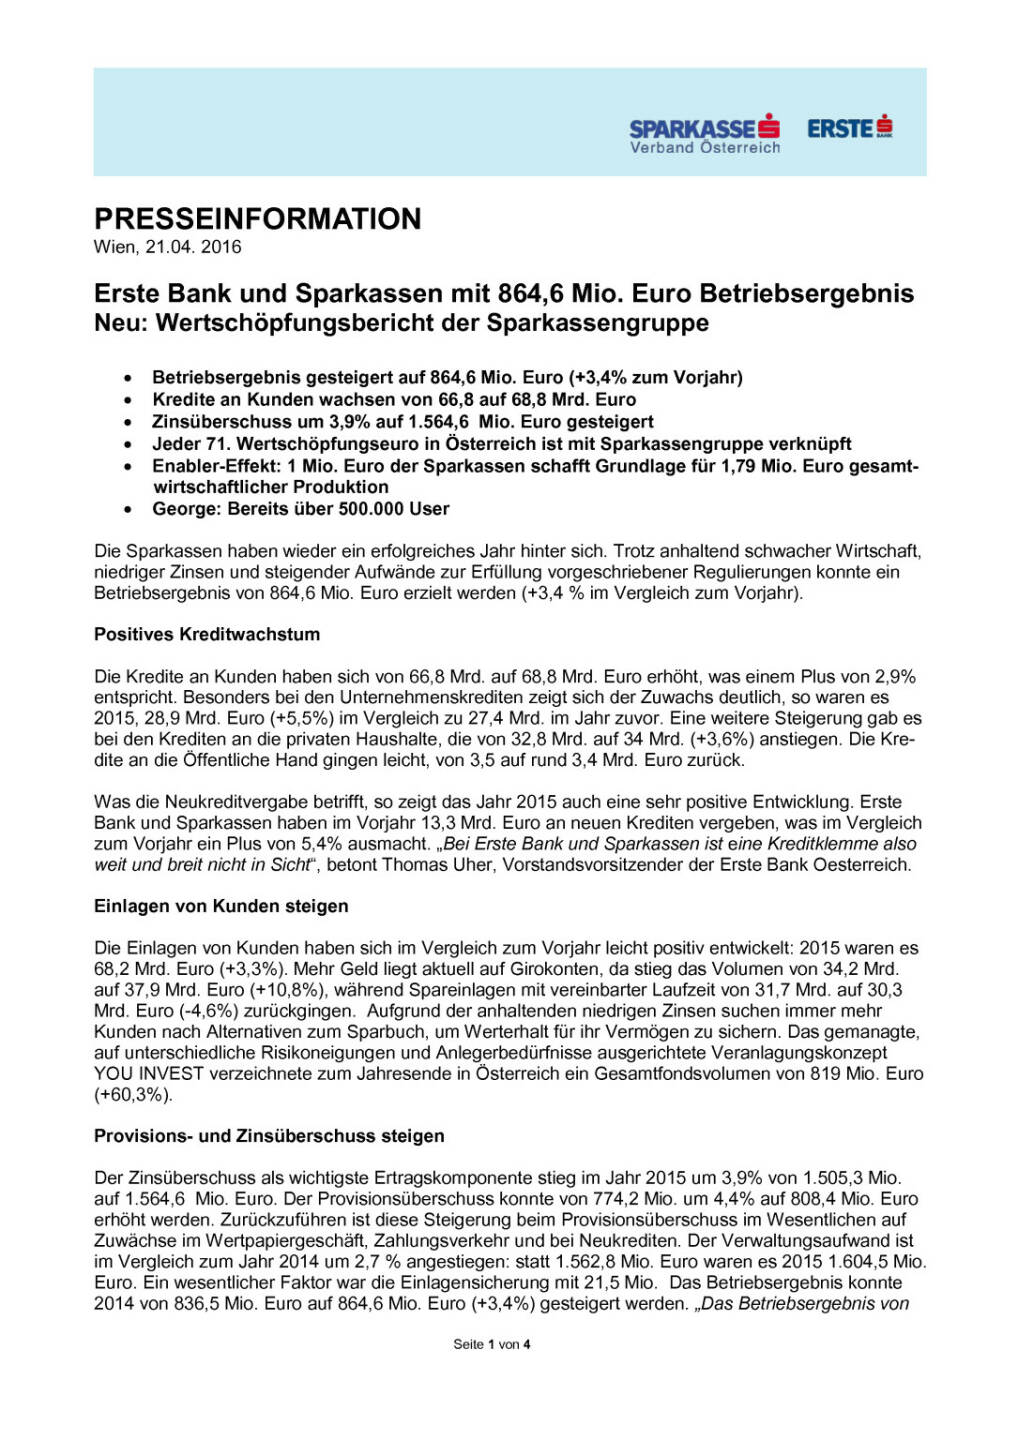 Erste Bank und Sparkassen Betriebsergebnis, Seite 1/4, komplettes Dokument unter http://boerse-social.com/static/uploads/file_920_erste_bank_und_sparkassen_betriebsergebnis.pdf